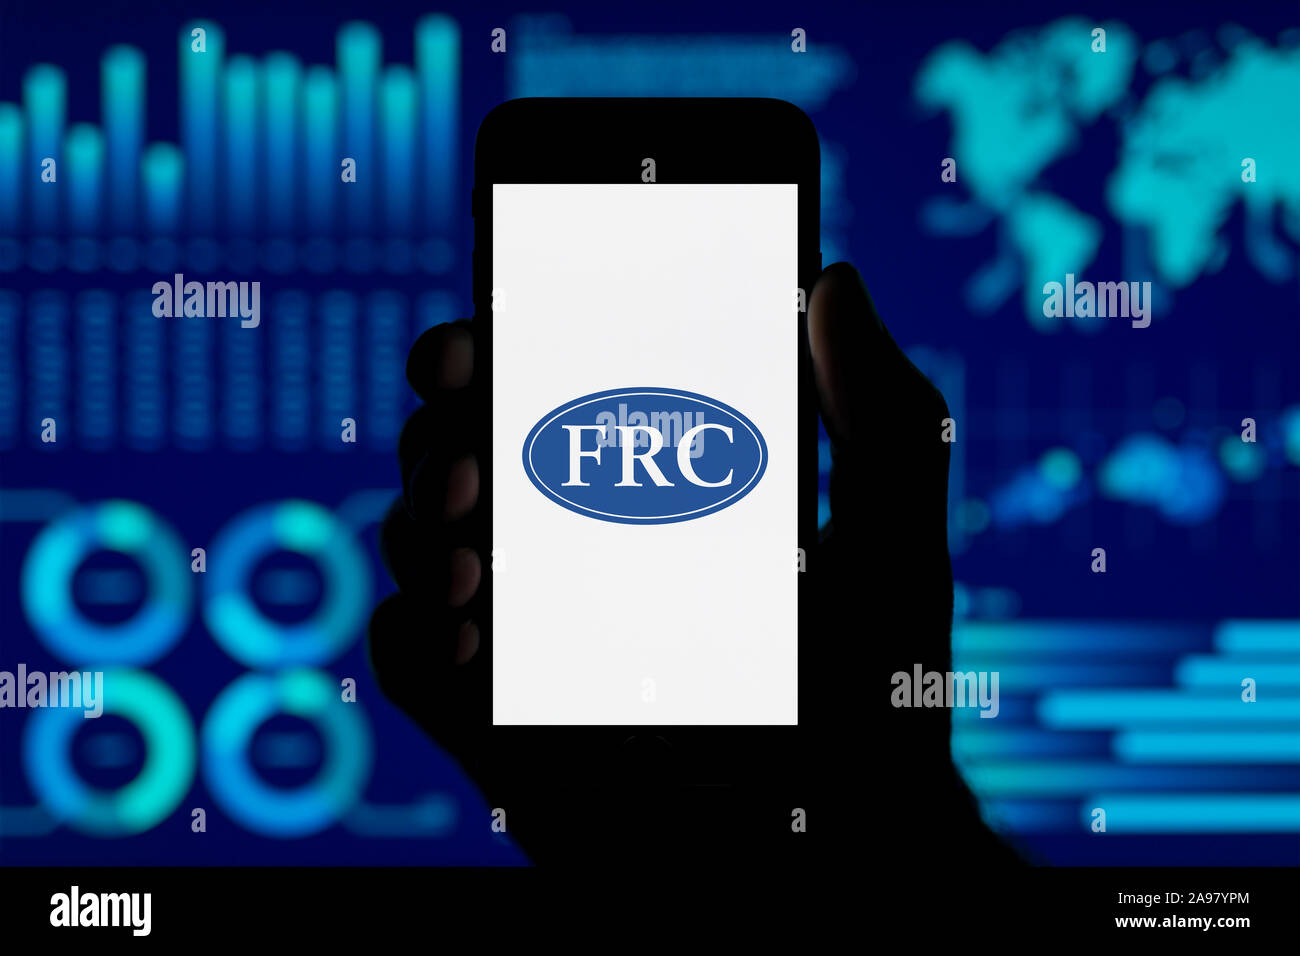 Ein Mann hält ein iPhone, das zeigt die Finanzielle Berichterstattung logo, Schuß gegen eine Visualisierung von Daten im Hintergrund (nur redaktionelle Nutzung). Stockfoto